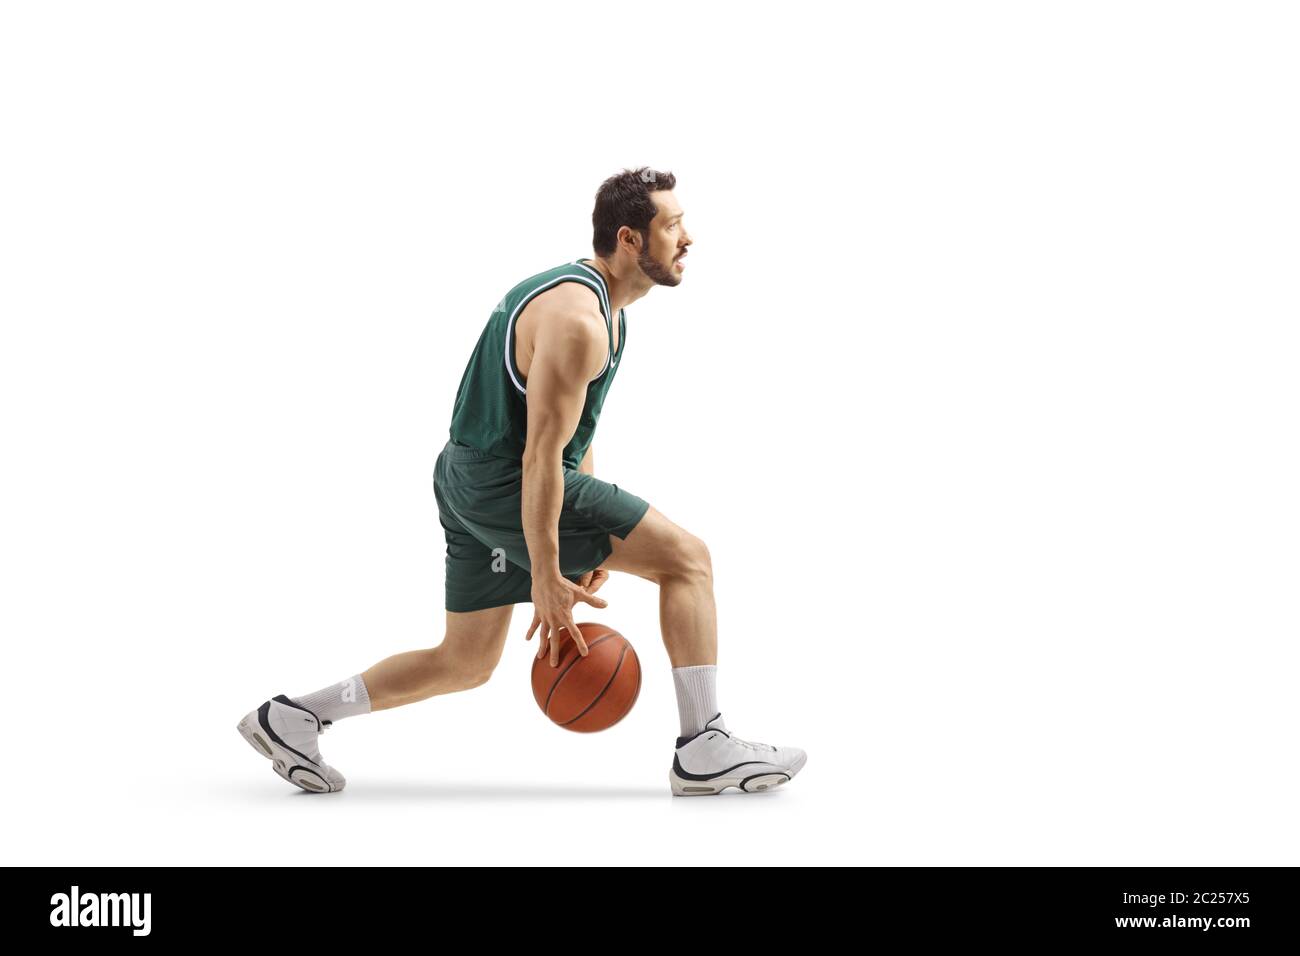 Photo de profil d'un joueur de basket-ball professionnel qui mène une balle entre ses jambes isolée sur fond blanc Banque D'Images